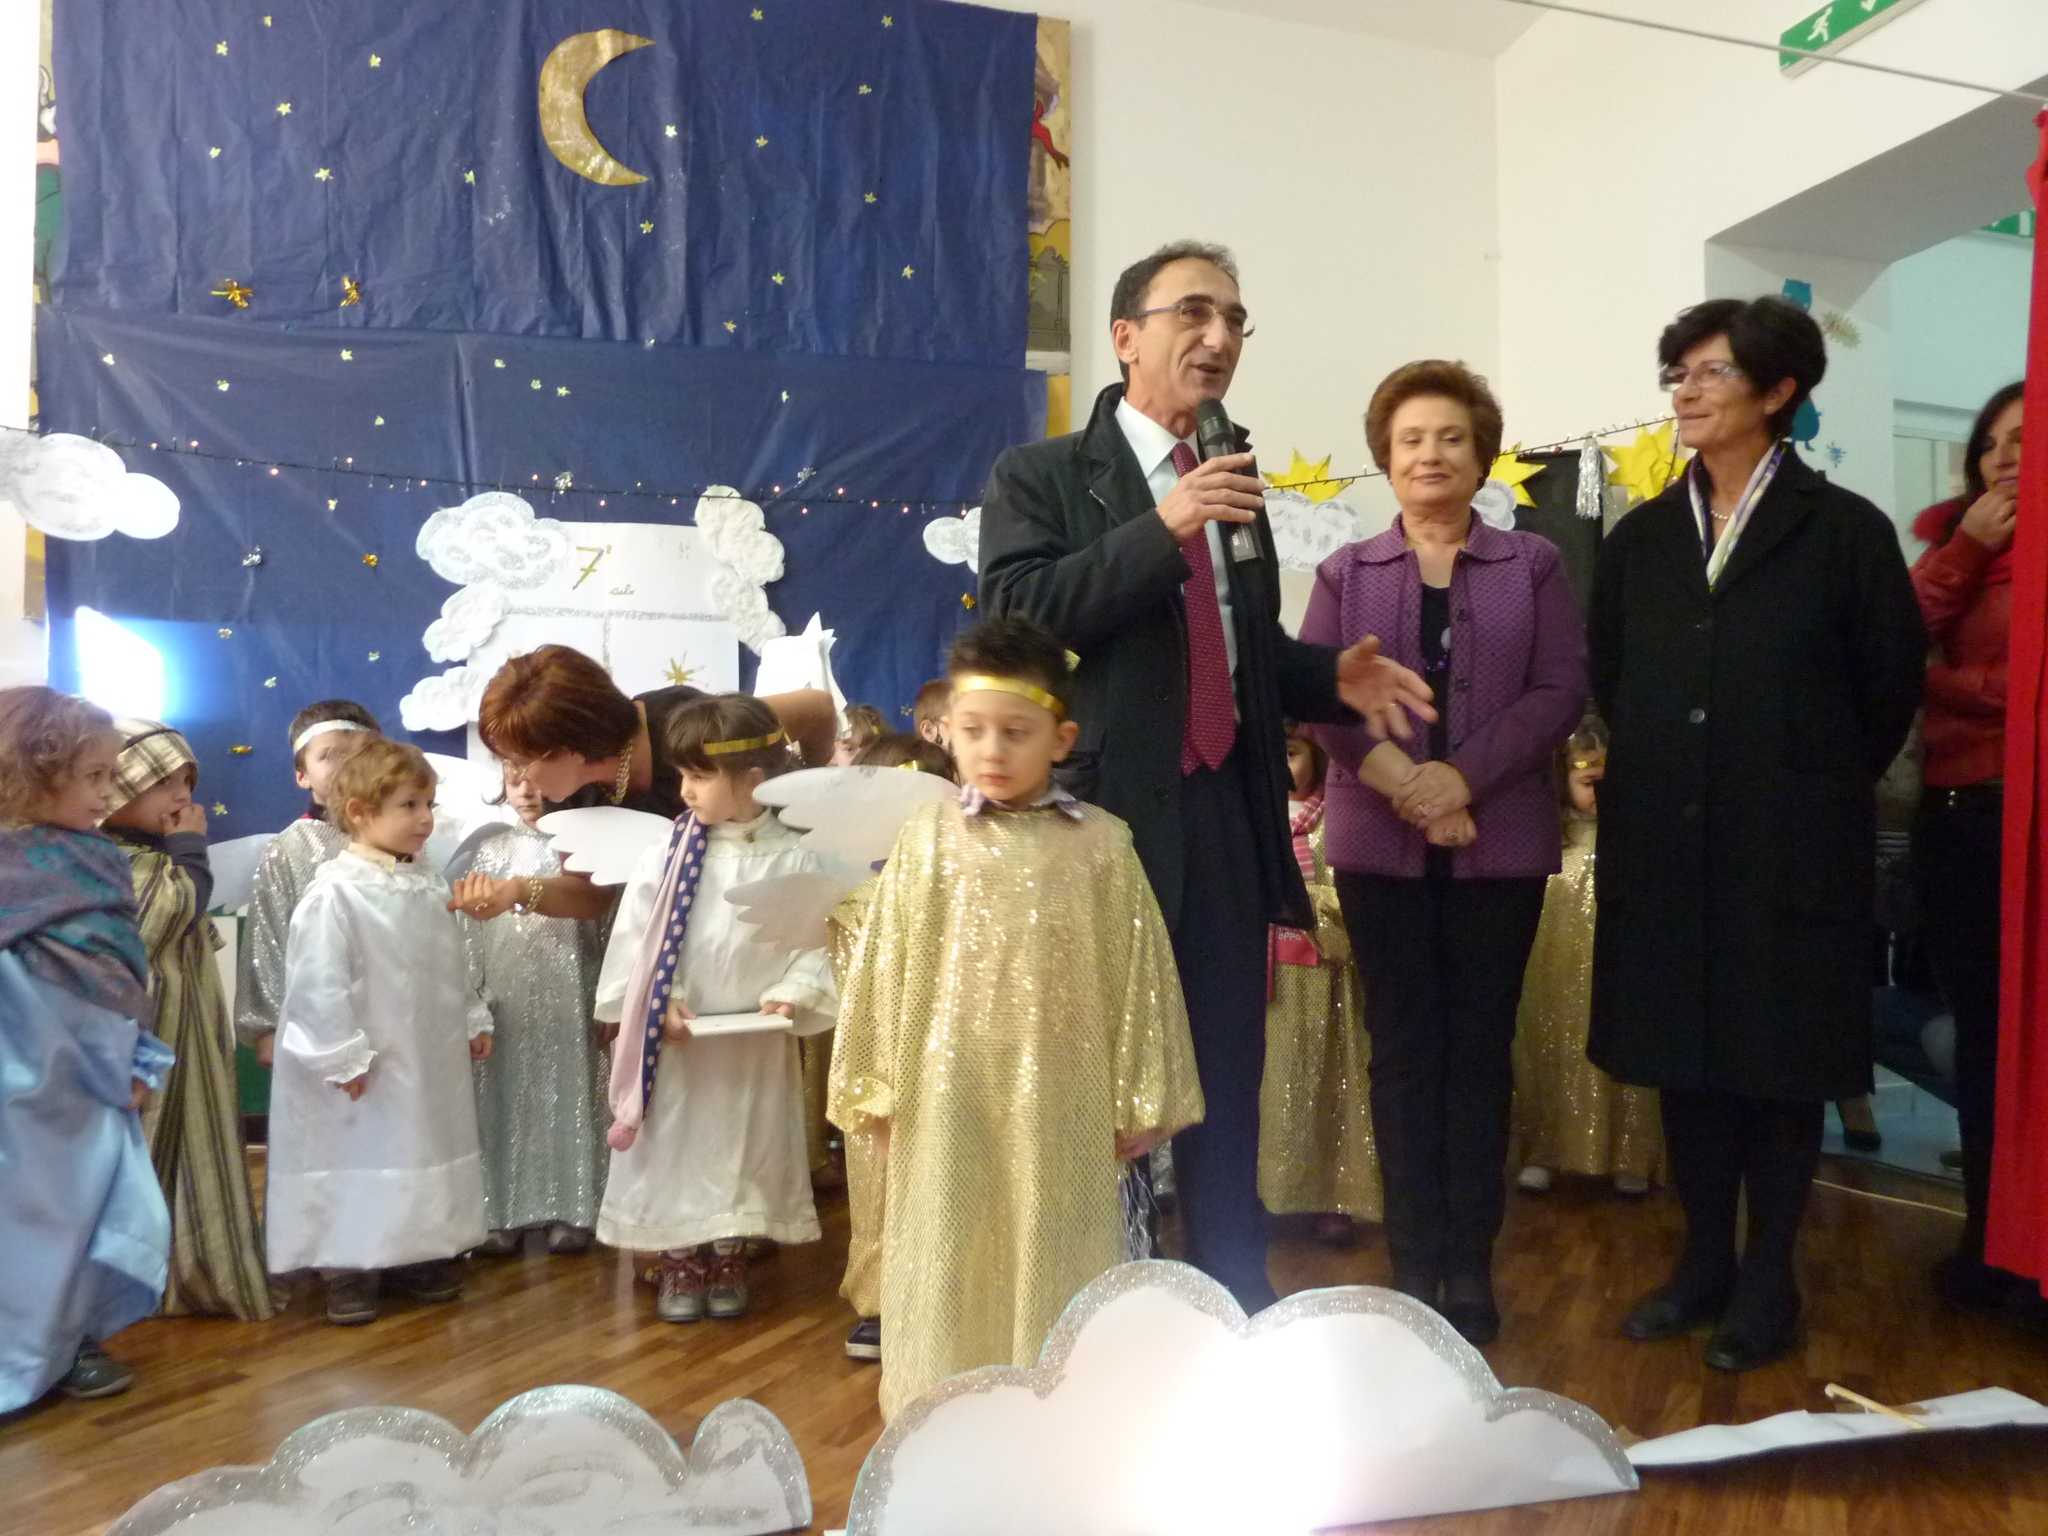 Abramo e Salerno presenti alla recita natalizia dell'asilo comunale "Guglielmo Pepe"